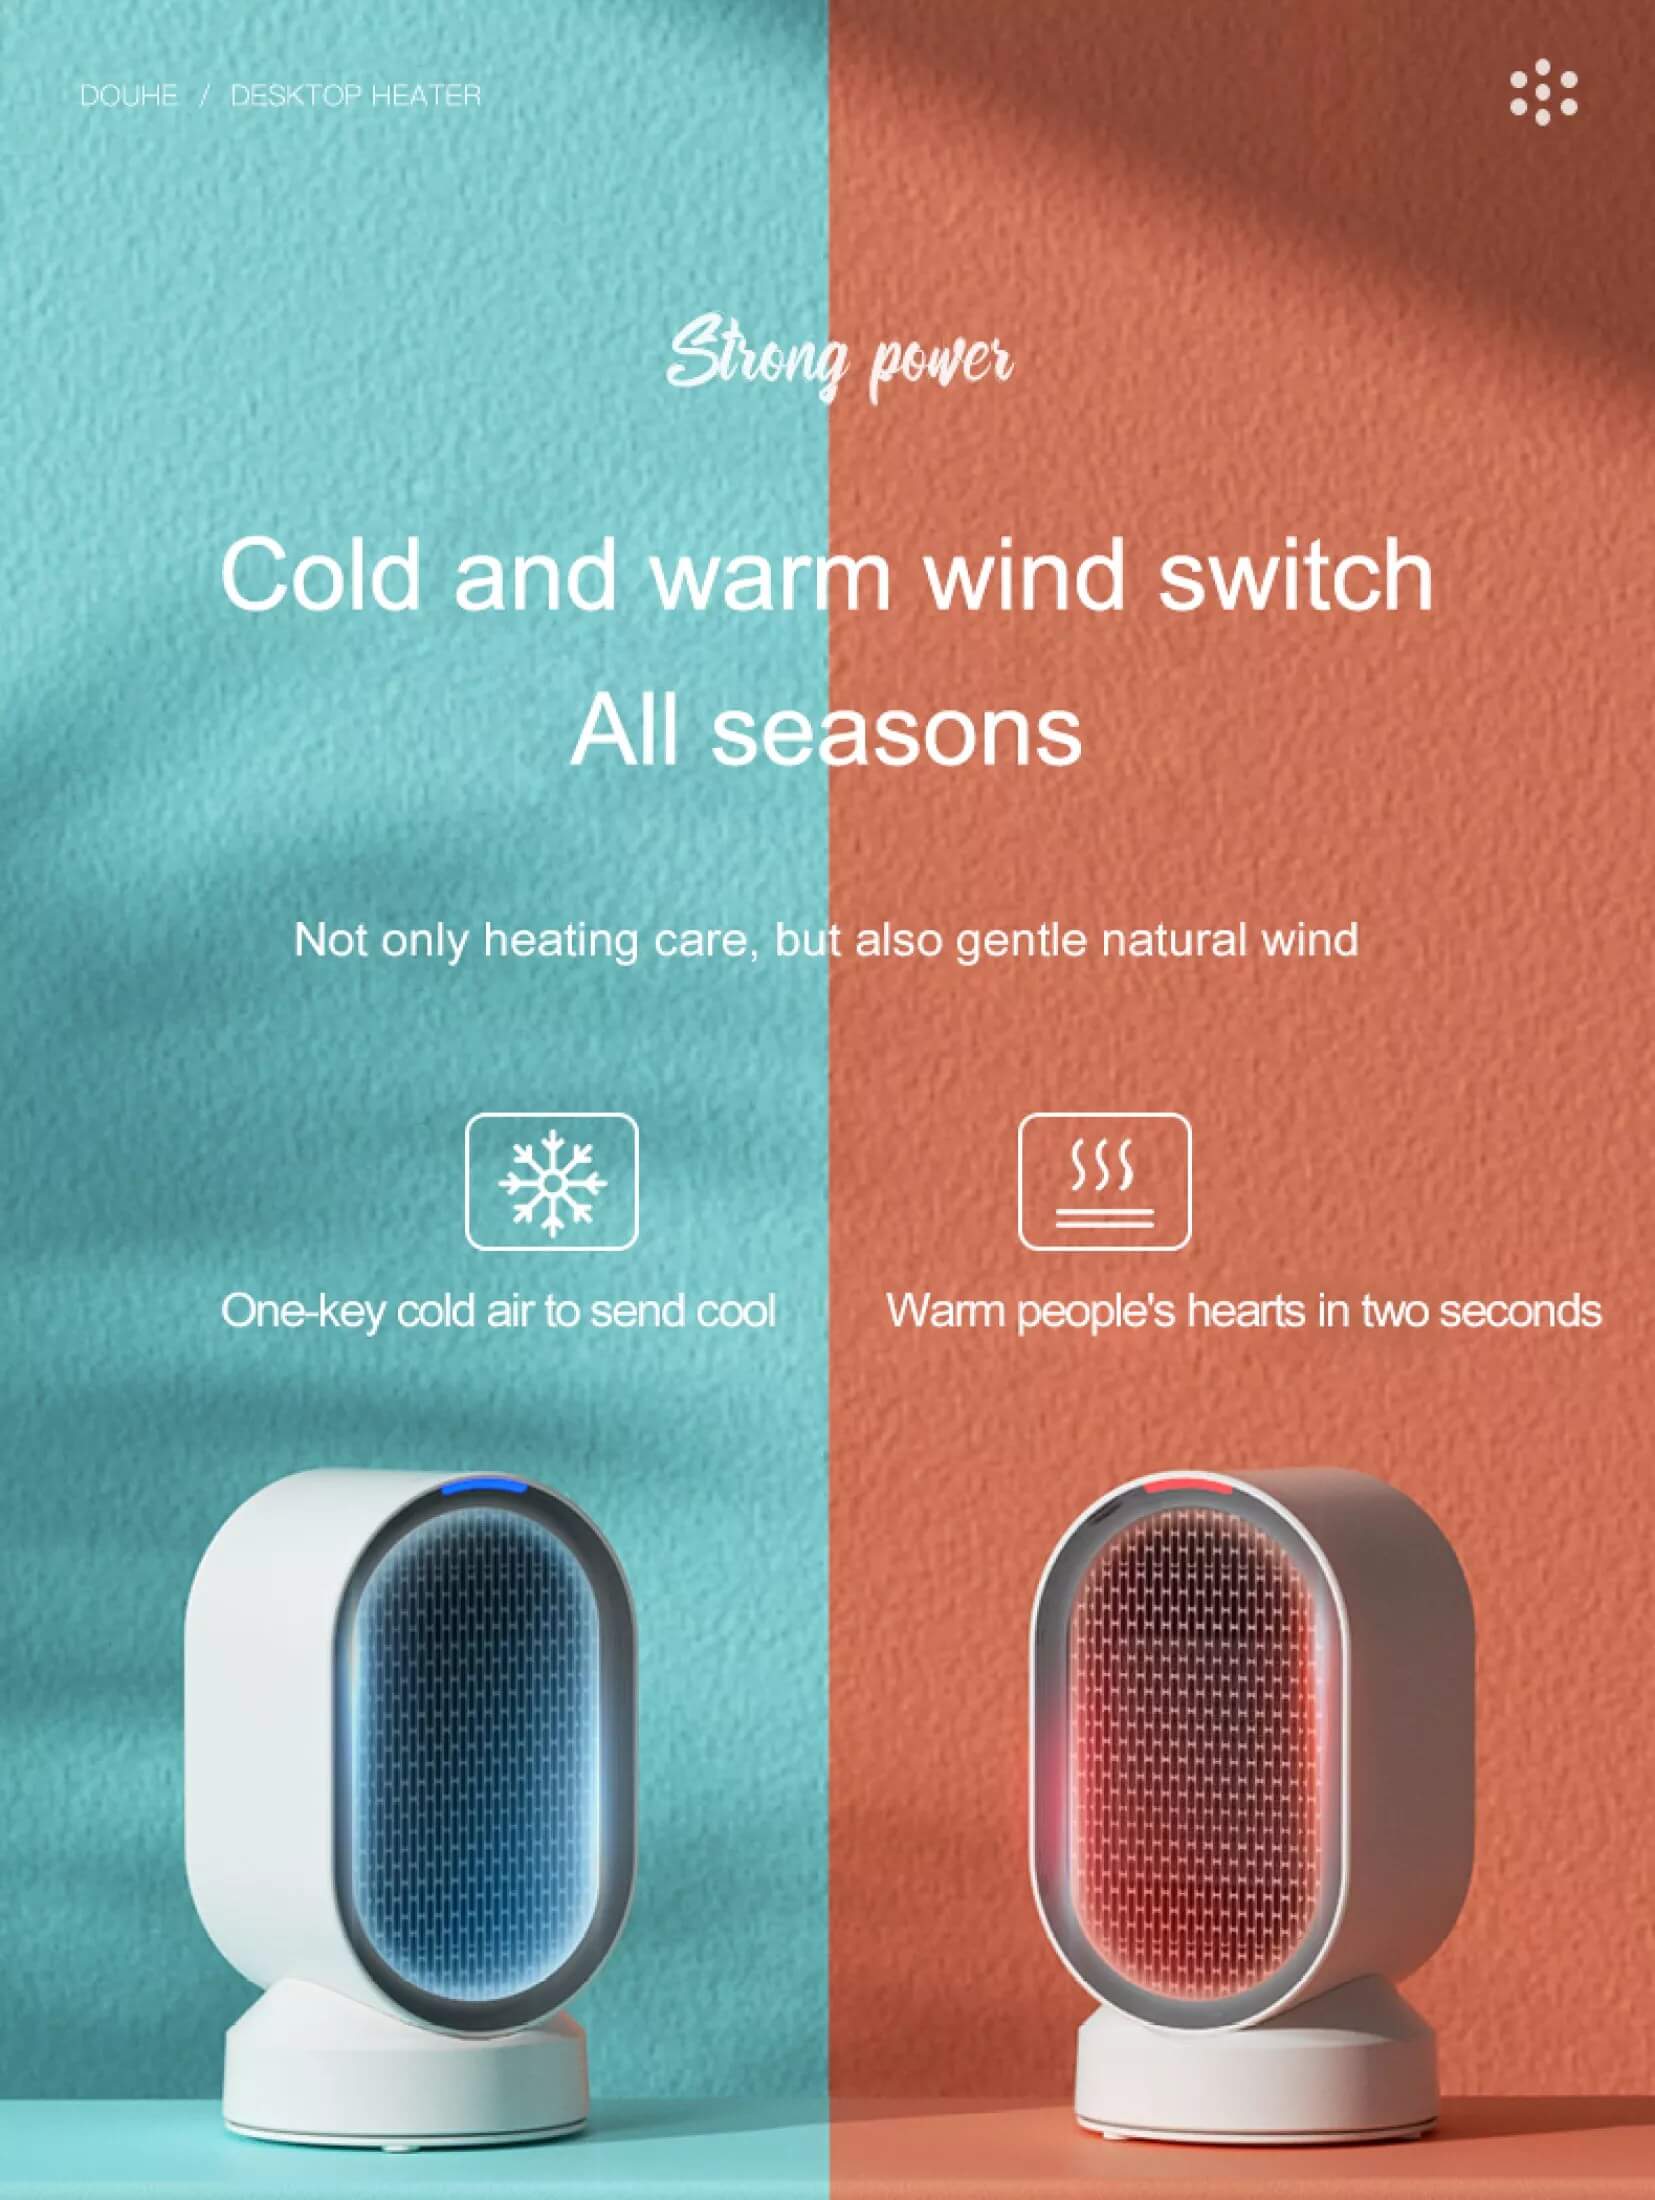 Xiaomi-Douhe-Electric-Heater-600w